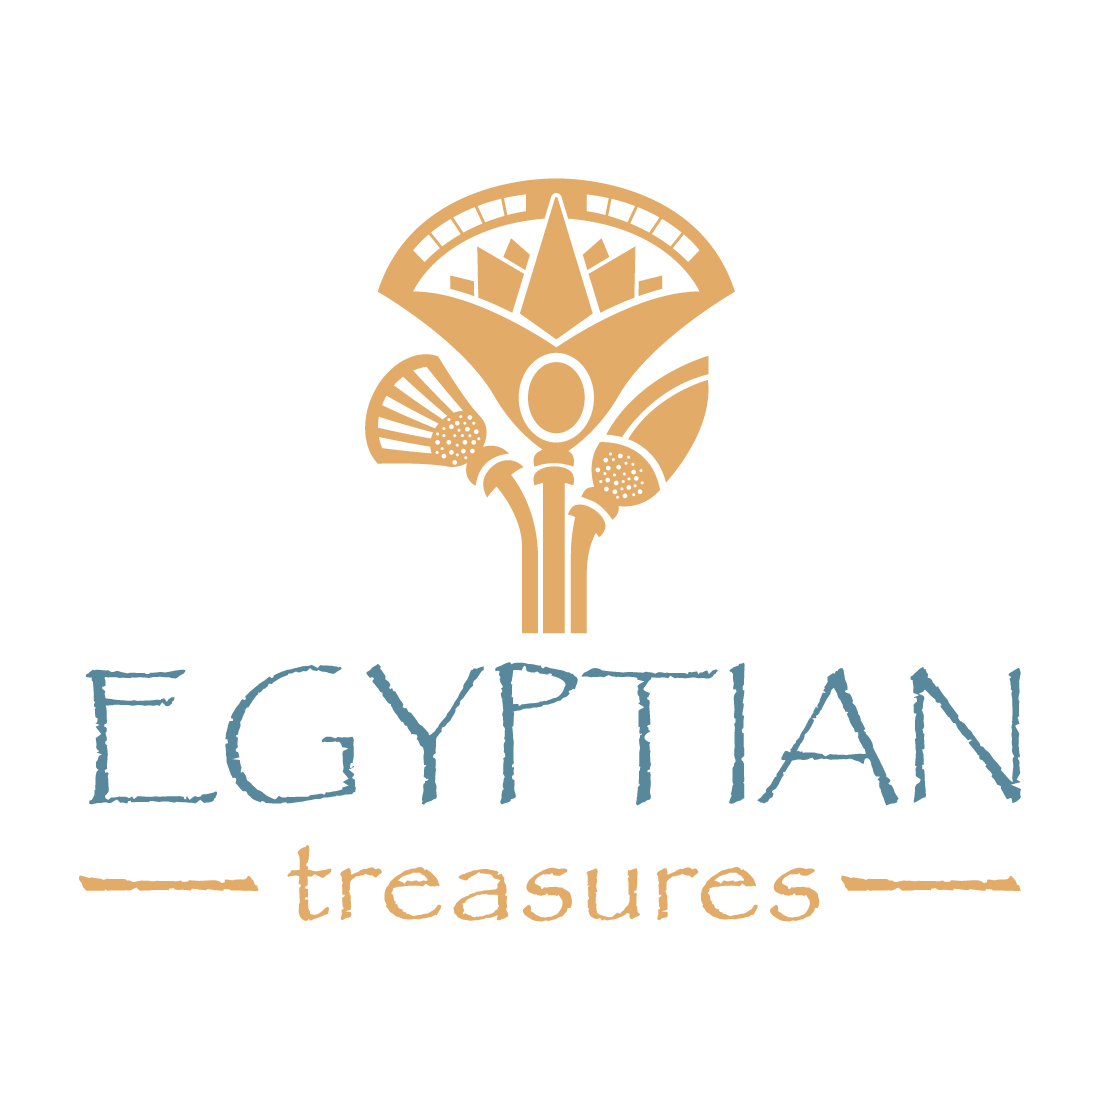 Egyptian treasures icon logo preview image.